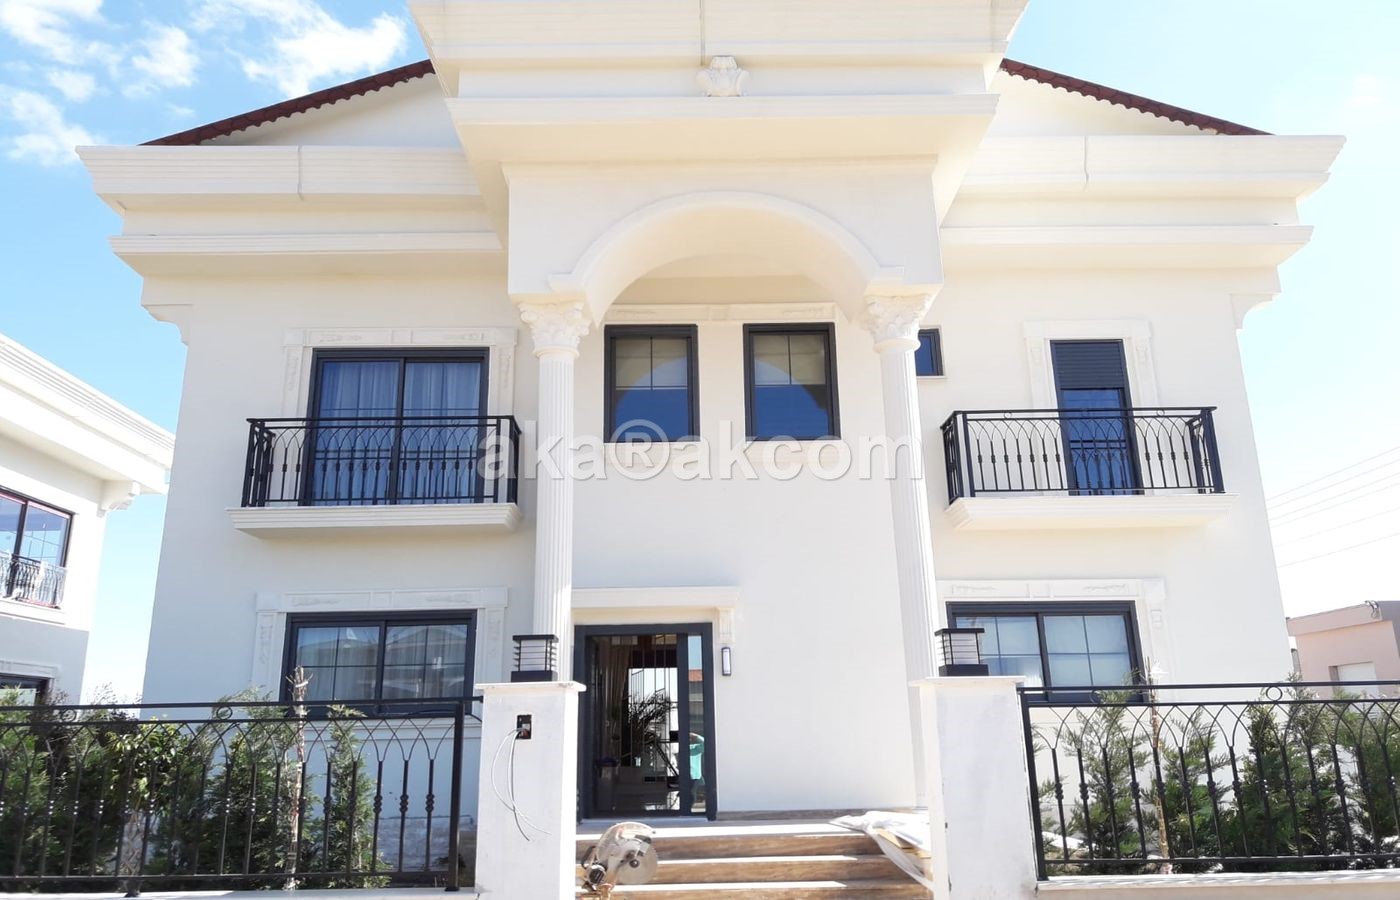 Very luxury villas for sale in Belek Antalya